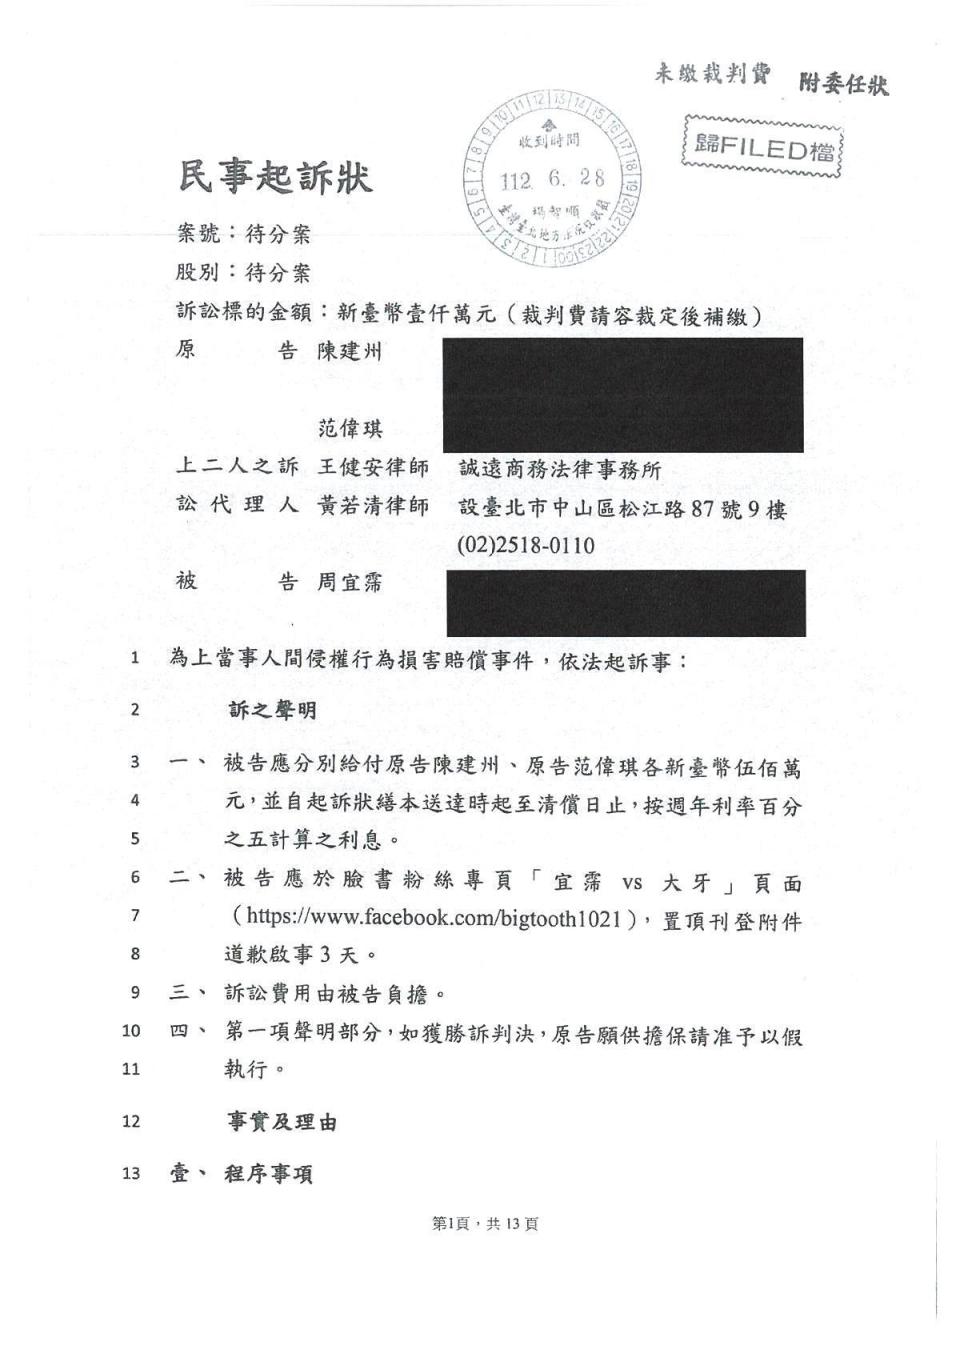 陳建州否認大牙周宜霈指控，與妻子范瑋琪聯合向大牙提起民事訴訟，求償1,000萬元，並要求公開道歉。（翻攝畫面）